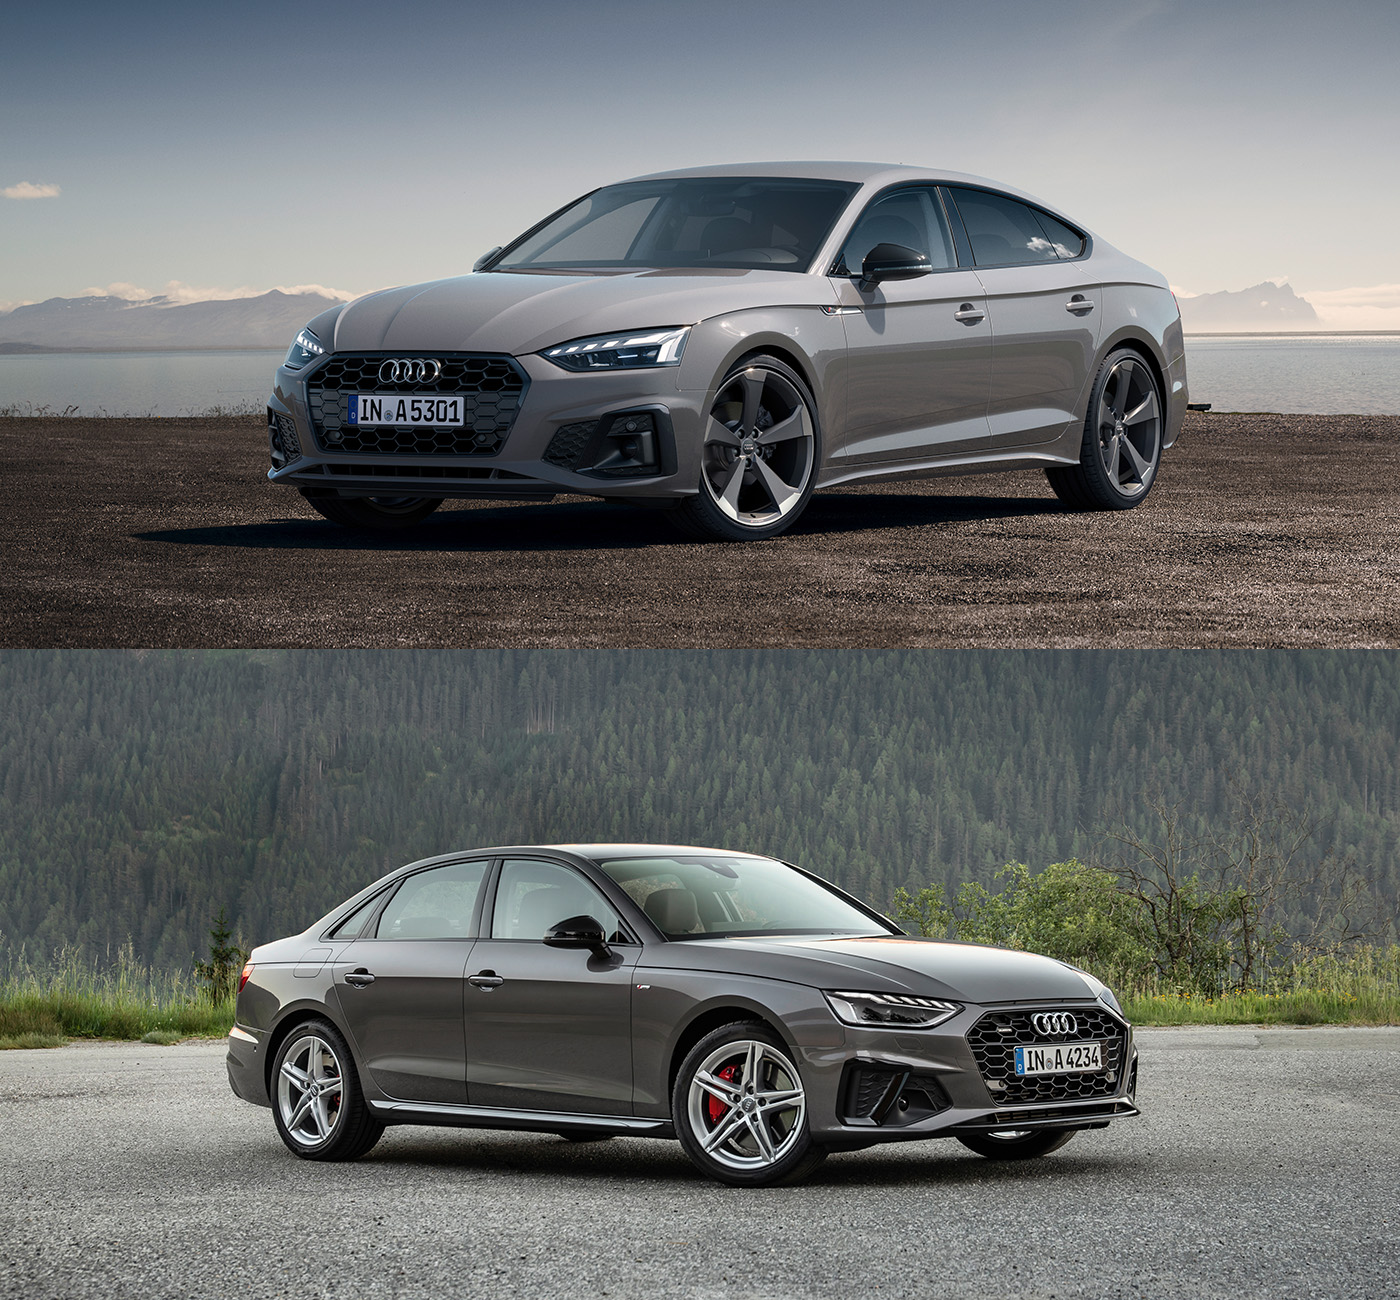 Обновленные Audi A4 и A5 дебютировали еще в прошлом году, однако до российского рынка добрались только сейчас. Оба автомобиля после рестайлинга получили небольшие изменения во внешности, а также усовершенствованную мультимедийную систему с 10,1-дюймовым сенсорным дисплеем. Обновленные модели комплектуются тремя бензиновыми двигателями, которые работают совместно с 12-вольтовым стартер-генератором. Мощность базовой версии 35 TFSI составляет 150 л.с., а модификации&nbsp;40 TFSI&nbsp;&mdash; 190 лошадиных сил. Мощность топового 45 TFSI &mdash; 249 лошадиных сил. Старшие версии машин комплектуются системой полного привода. На данный момент новинки уже доступны для заказа по цене от 2&nbsp;375&nbsp;000 и 2&nbsp;793&nbsp;000 руб. соответственно.